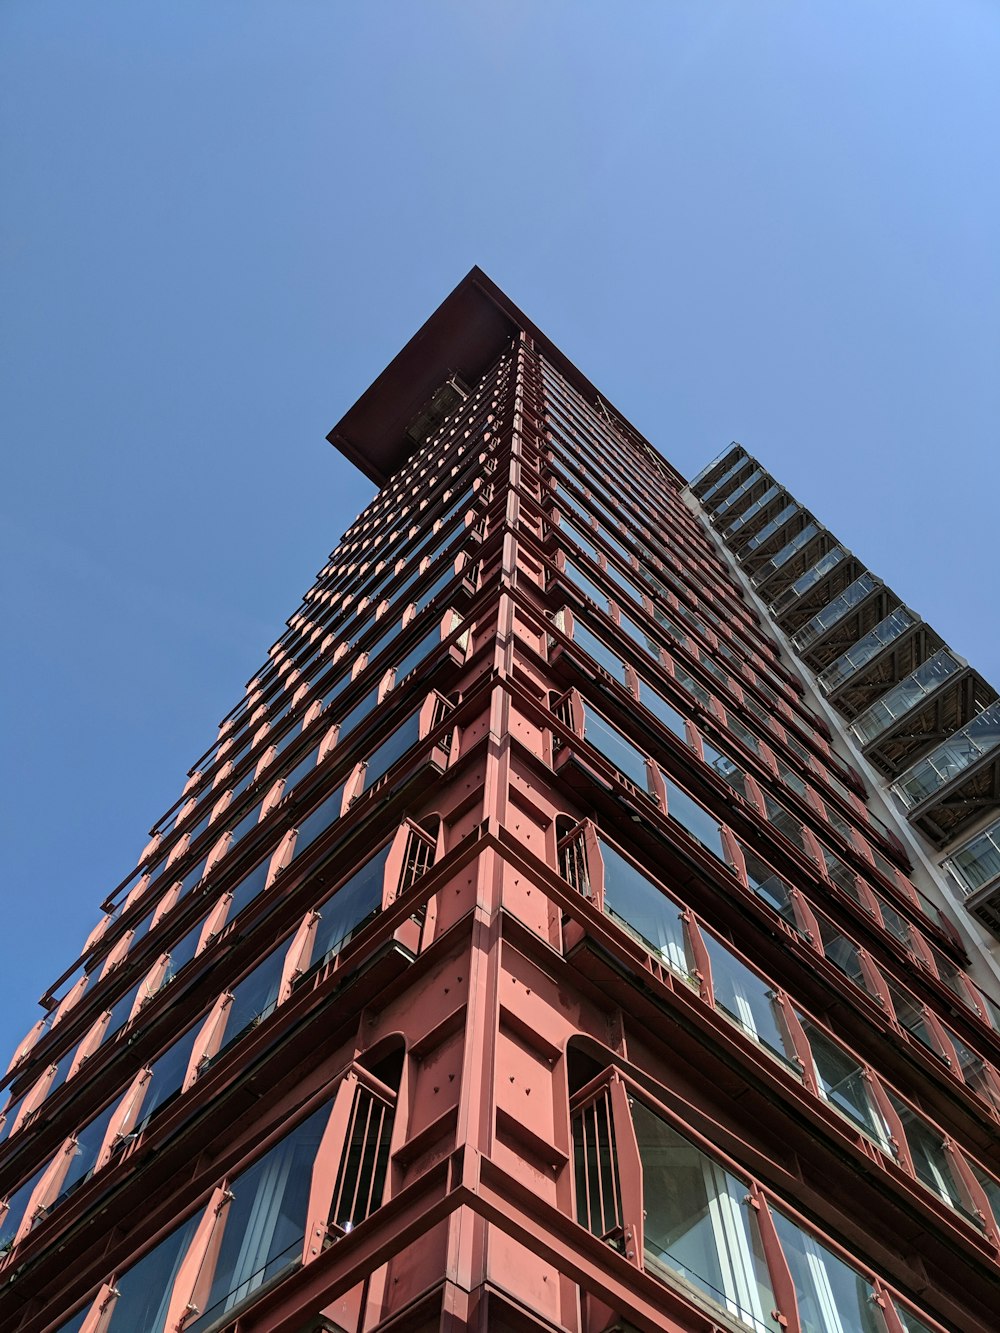 Fotografía de ángulo bajo de un edificio de gran altura rosa